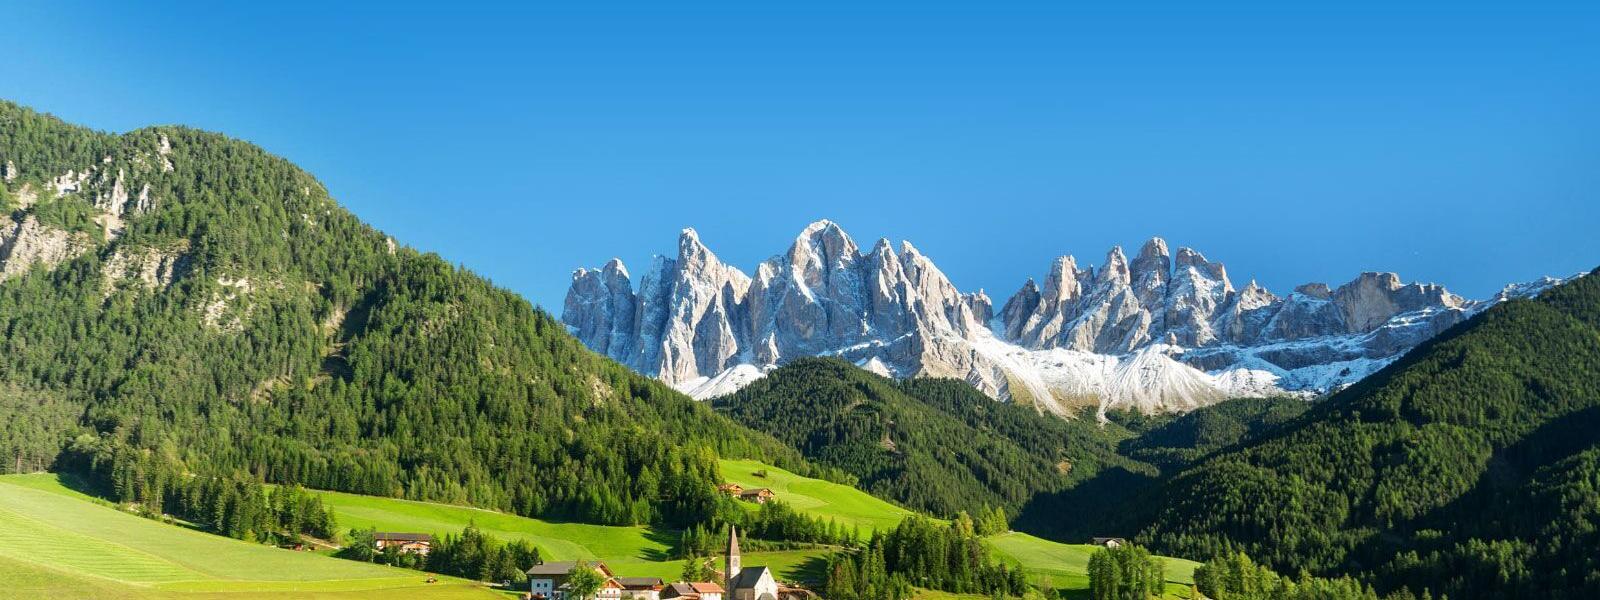 Ferienwohnung und Ferienhaus in Südtirol - e-domizil